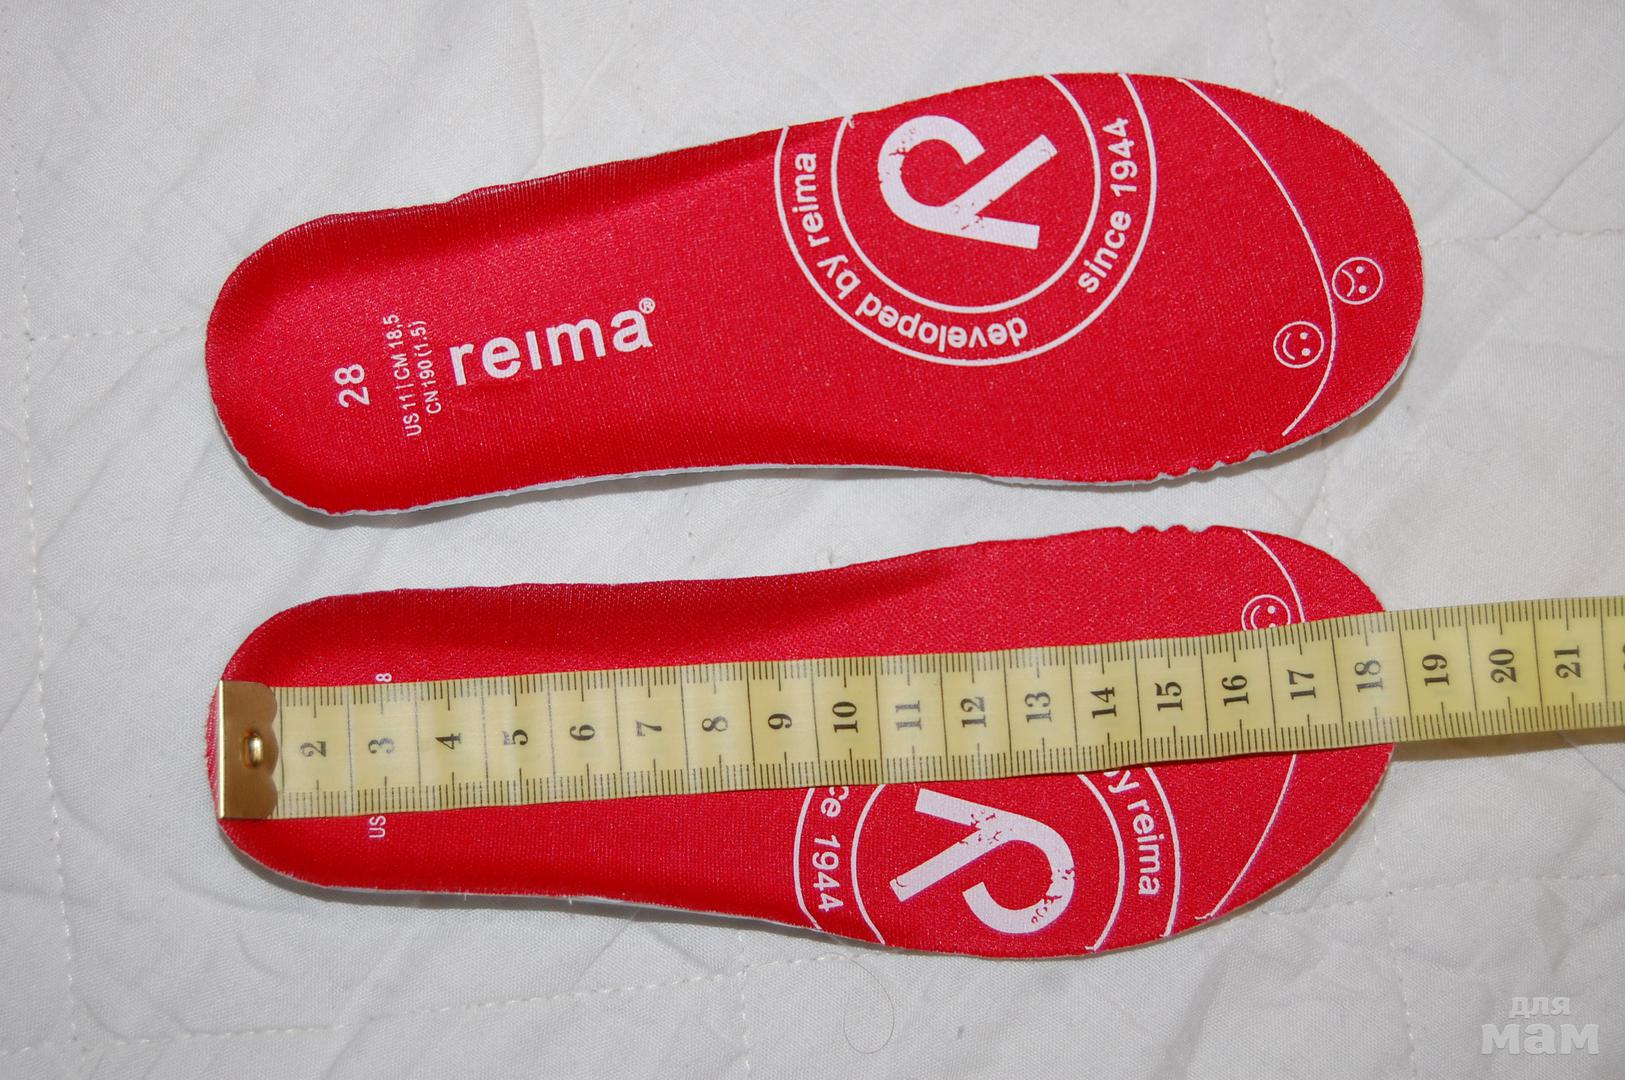 Купить обувь 37 размера. Reima стелька 27 размер. Ботинки Reimatec 24 размер длина стельки. Стелька Рейма 25 размер. Reima стелька 28.